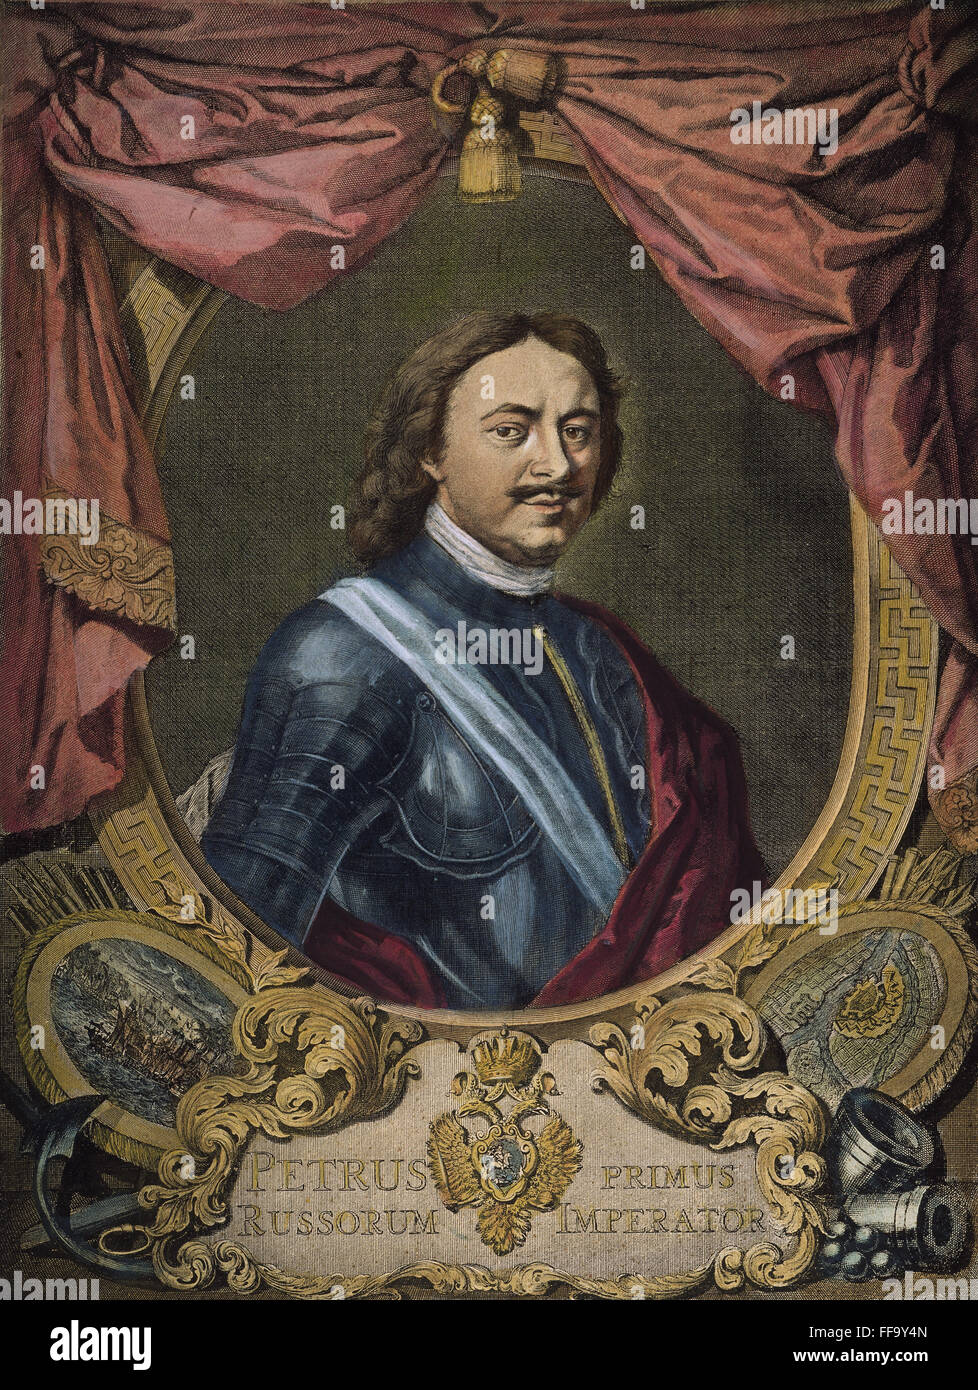 PETER der große von Russland /n(1672-1725): Kupfer Kupferstich von Jakob Houbraken (1698-1780). Stockfoto